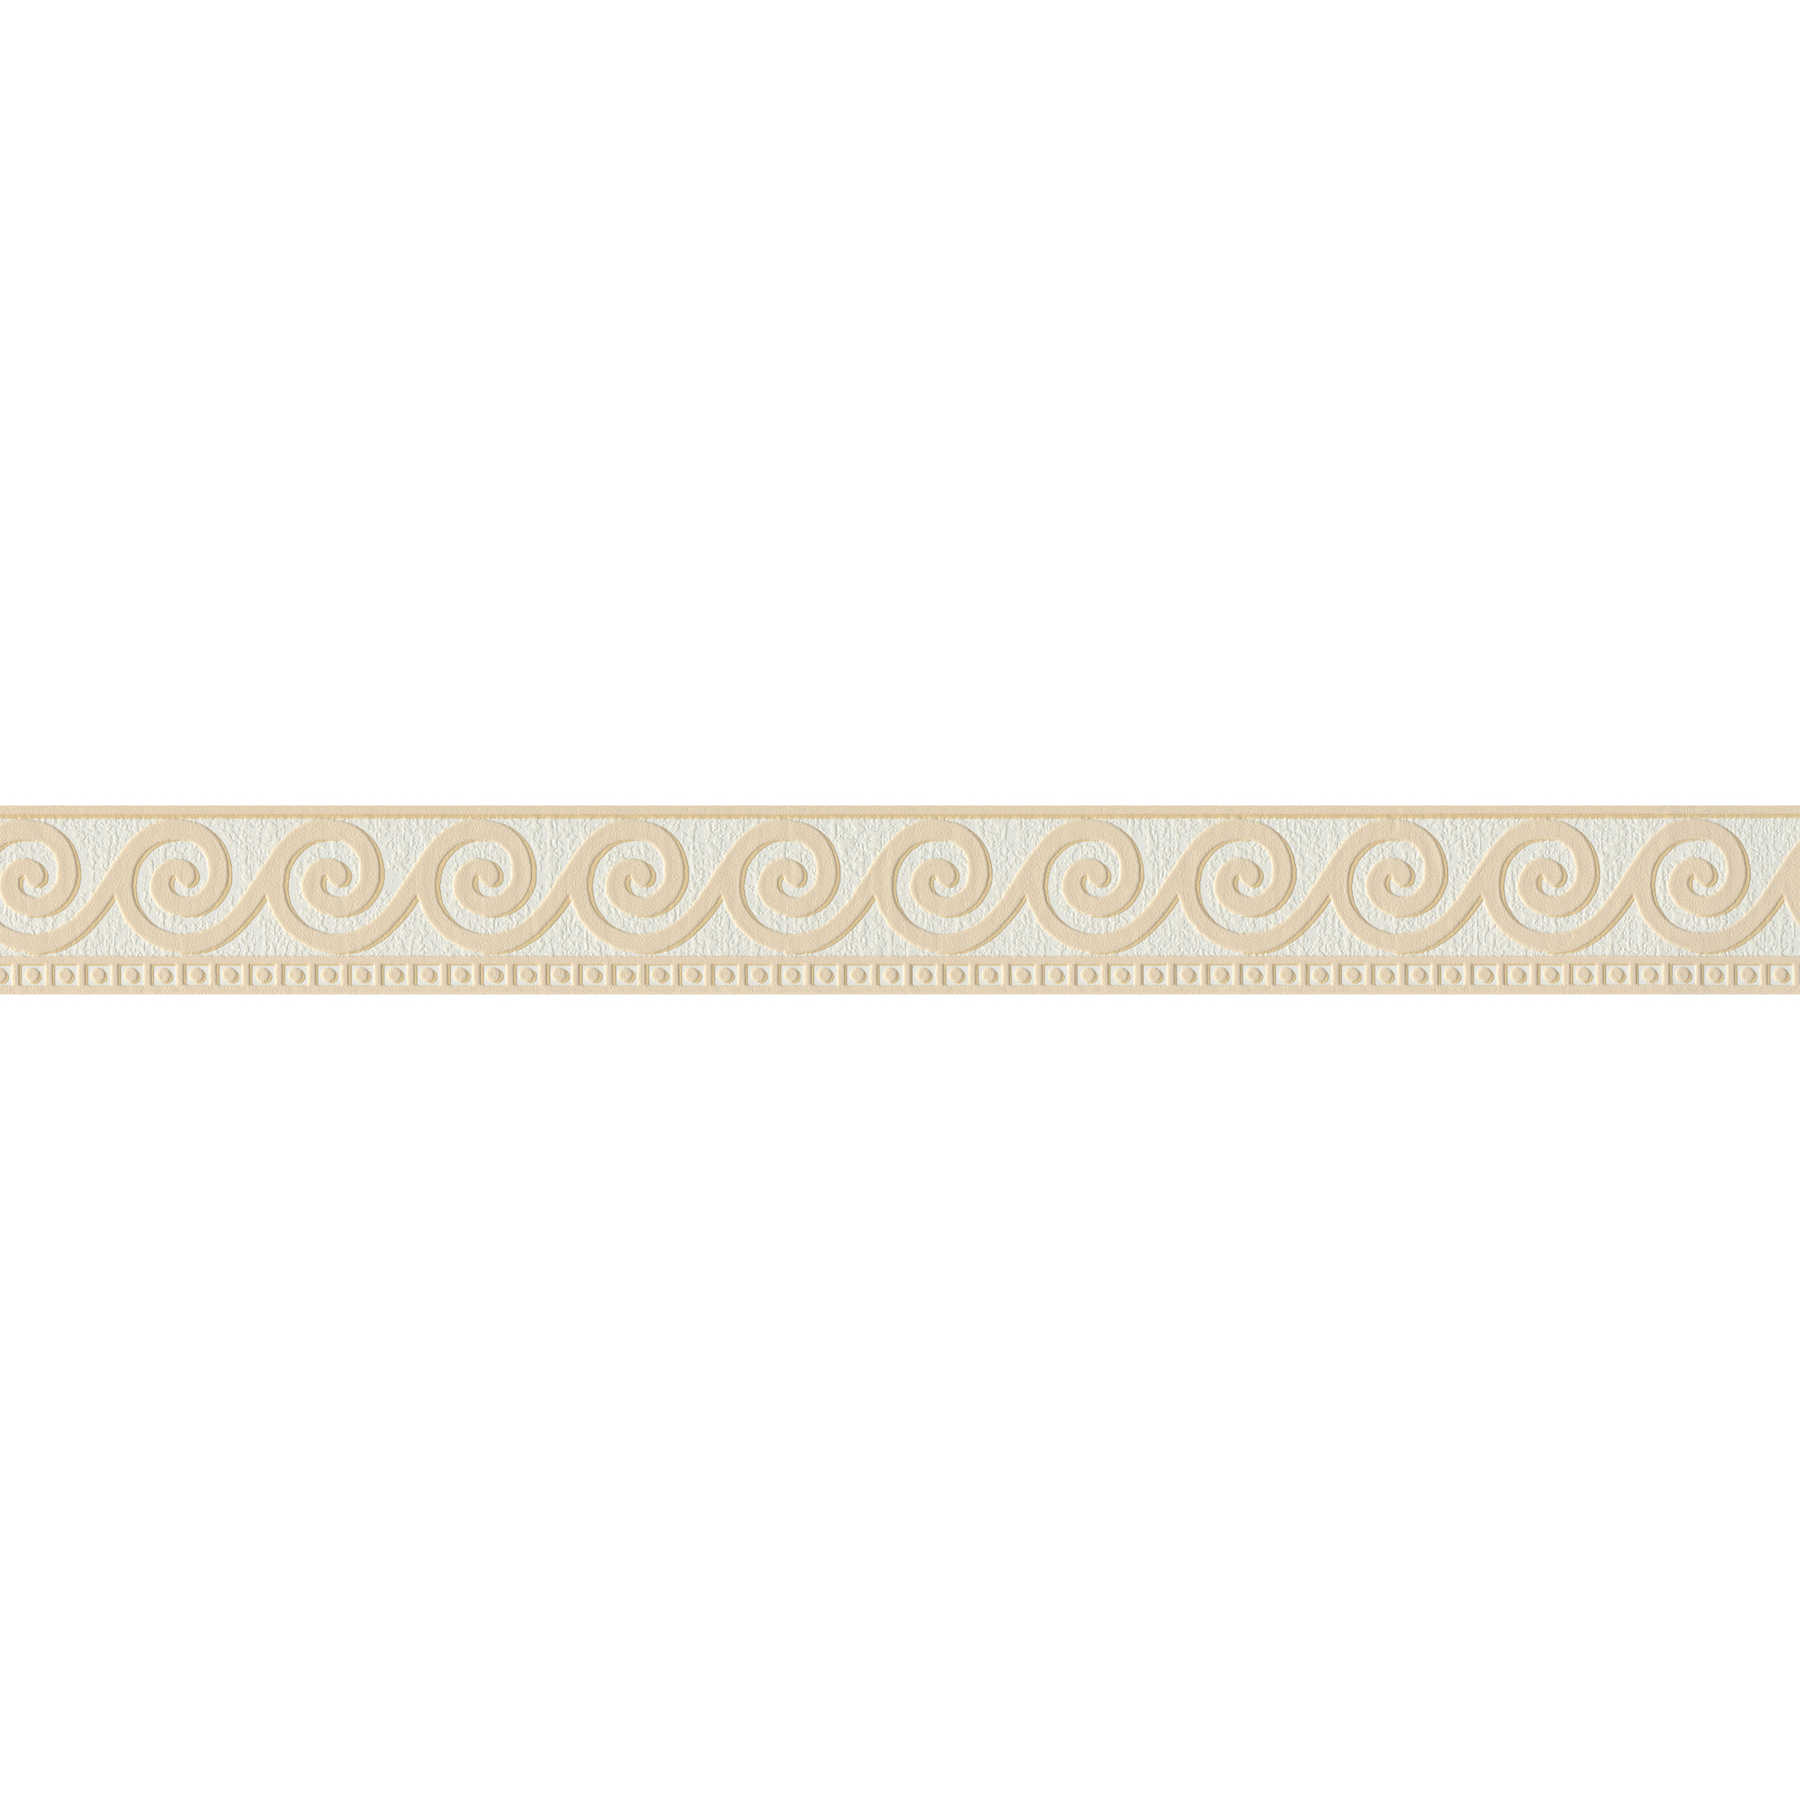 Ornamento de meandro texturizado - Beige, Blanco
